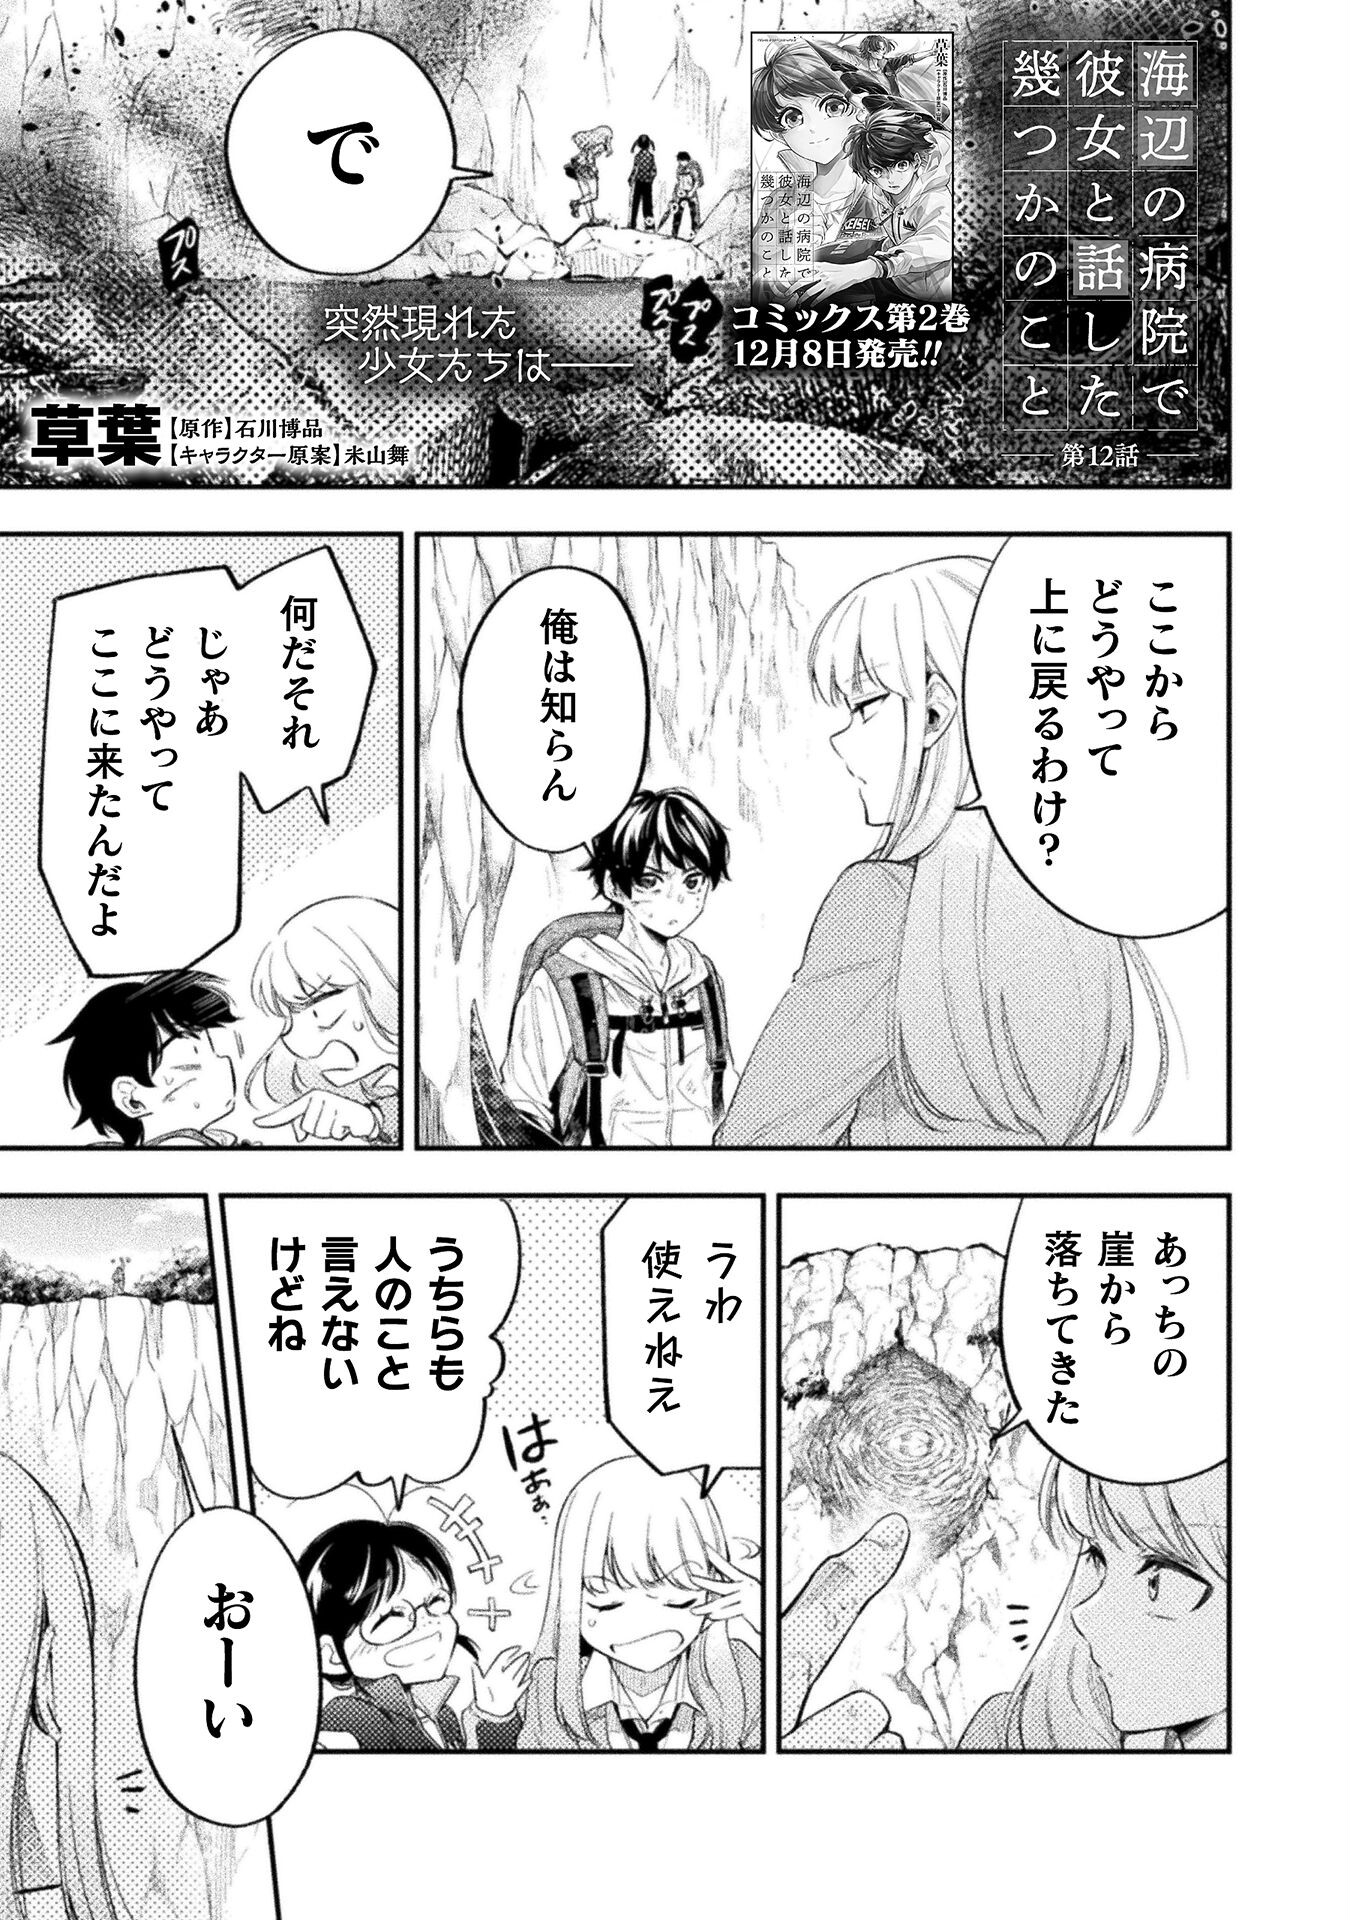 Umibe no Byouin de Kanojo to Hanashita Ikutsu ka no Koto - Chapter 12 - Page 1